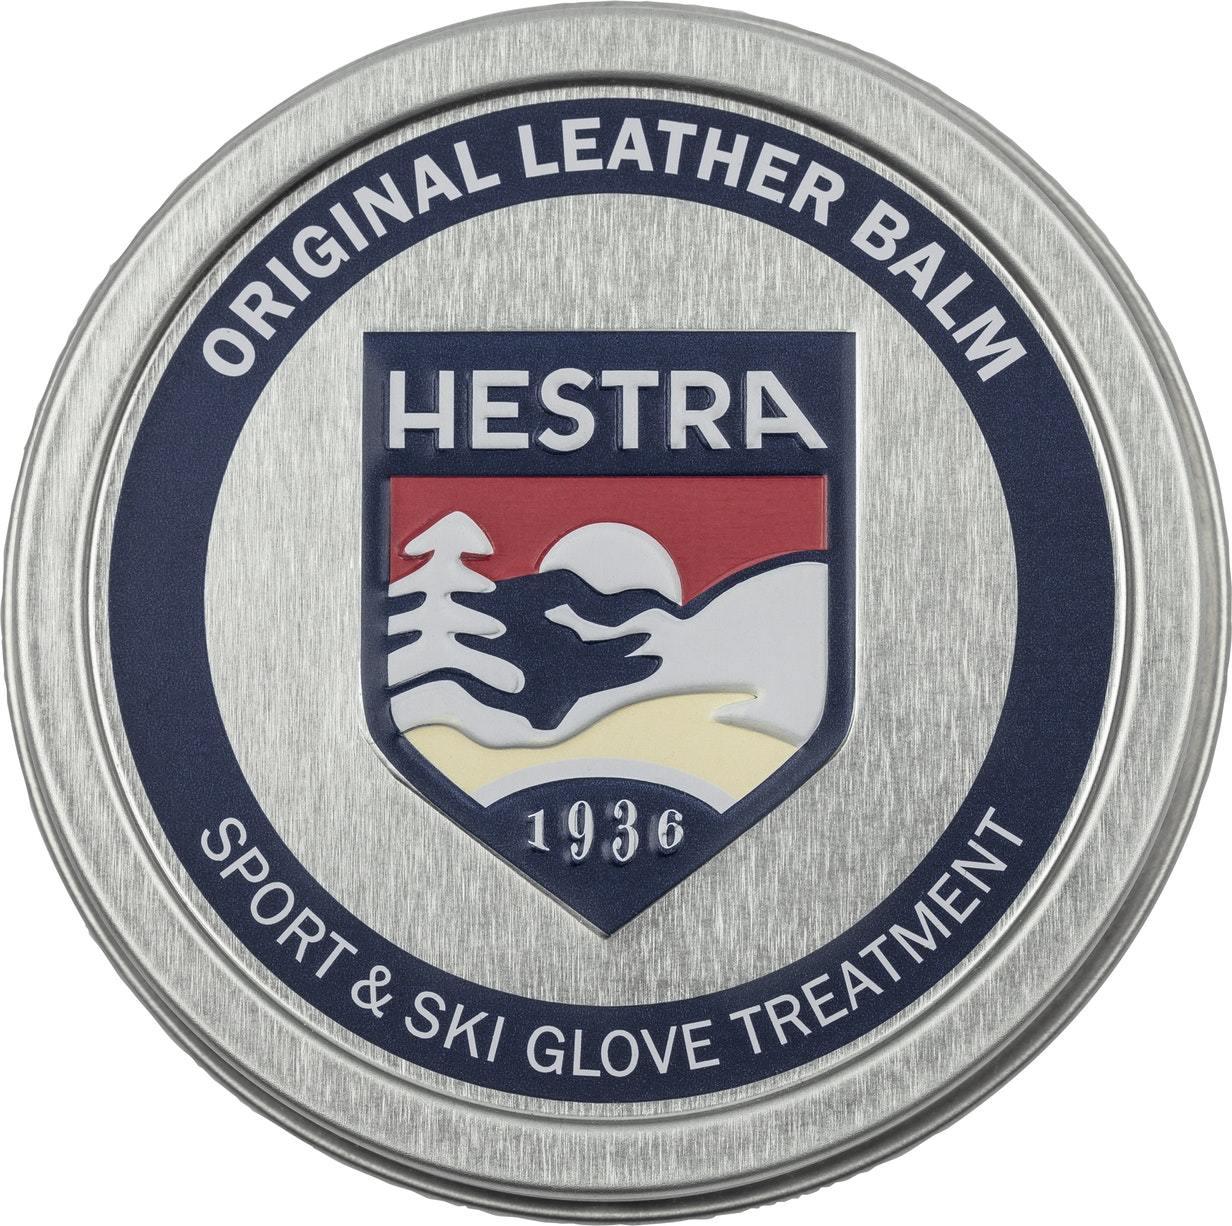 Hestra Leather Balm (Läderfett) från Hestra. | TacNGear - Utrustning för polis och militär och outdoor.